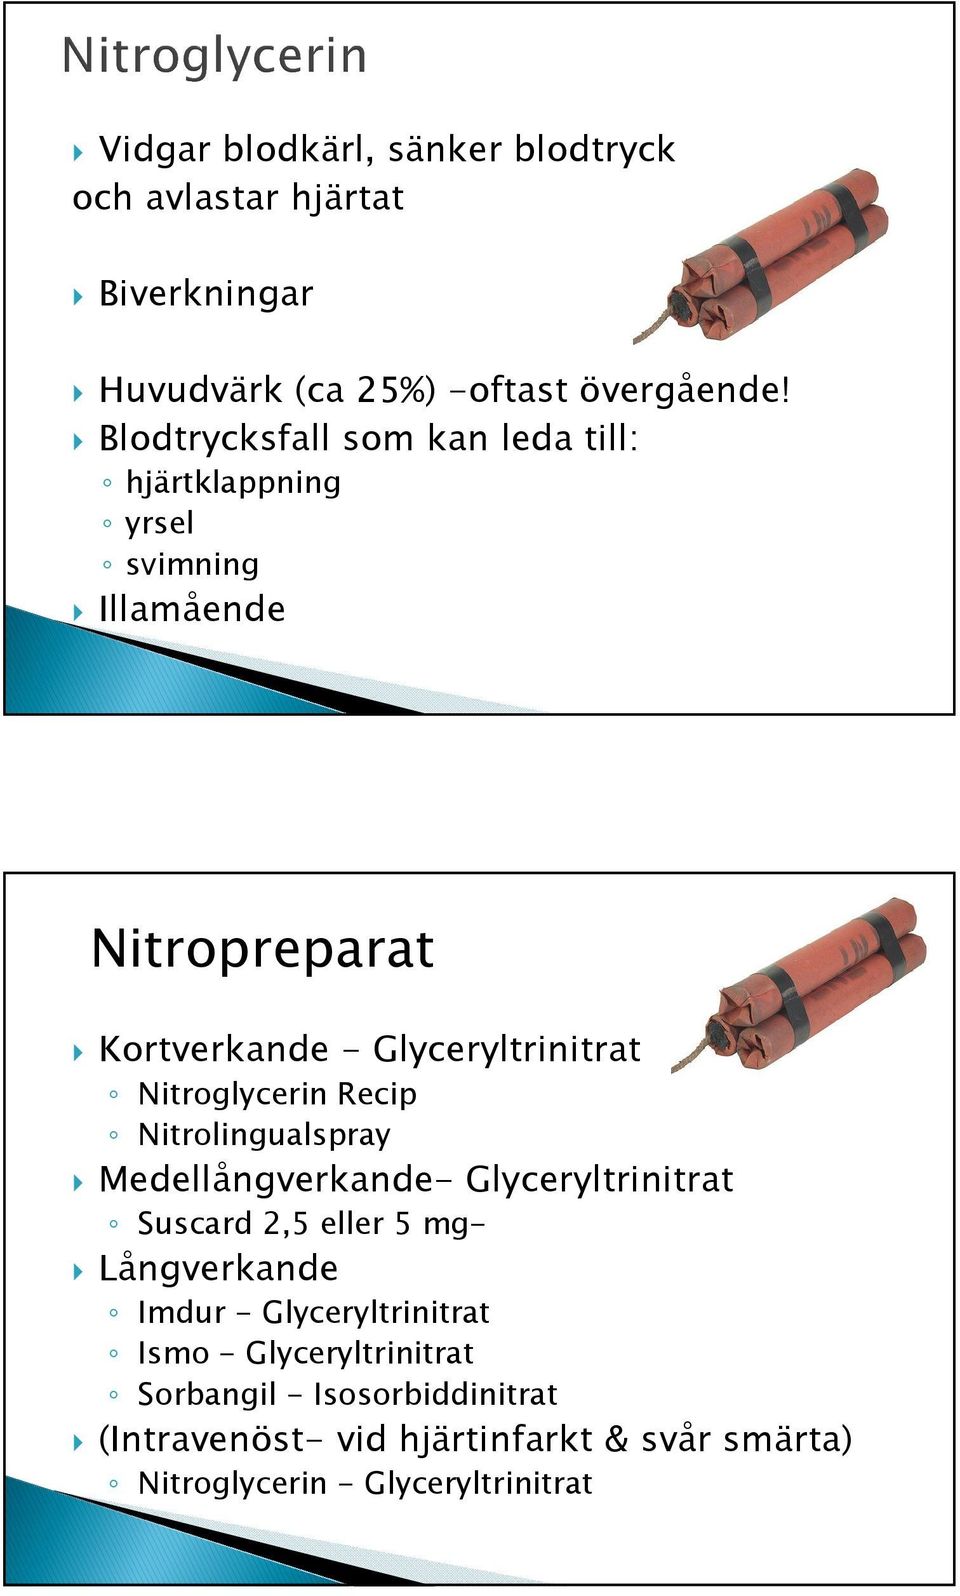 Nitroglycerin Recip Nitrolingualspray Medellångverkande- Glyceryltrinitrat Suscard 2,5 eller 5 mg- Långverkande Imdur -